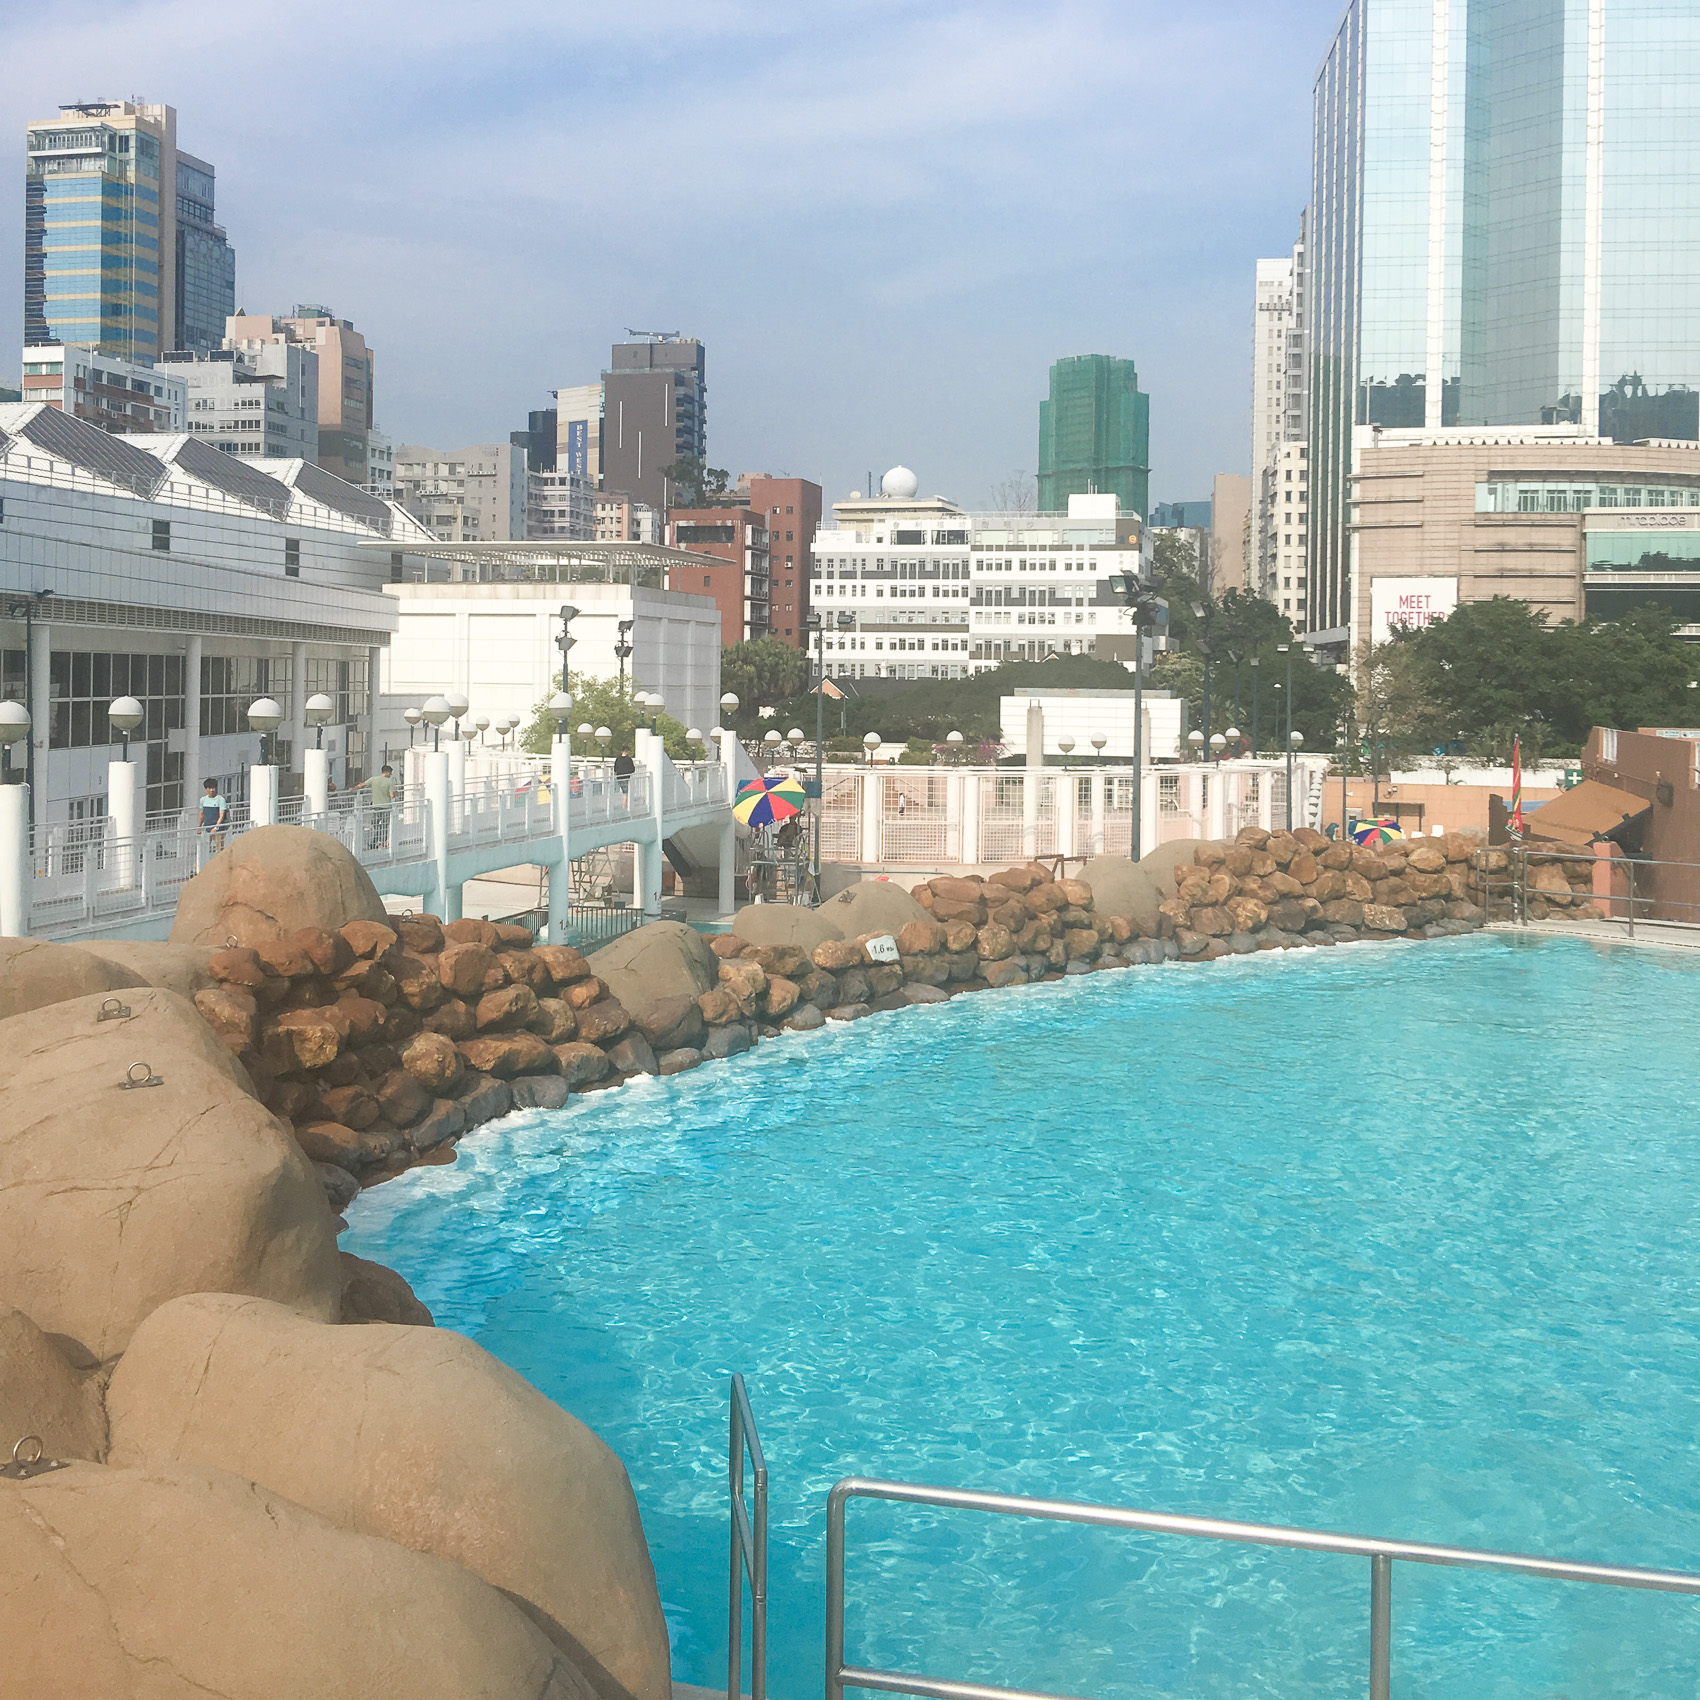 Hong Kong Kowloon Park Swimming Pool